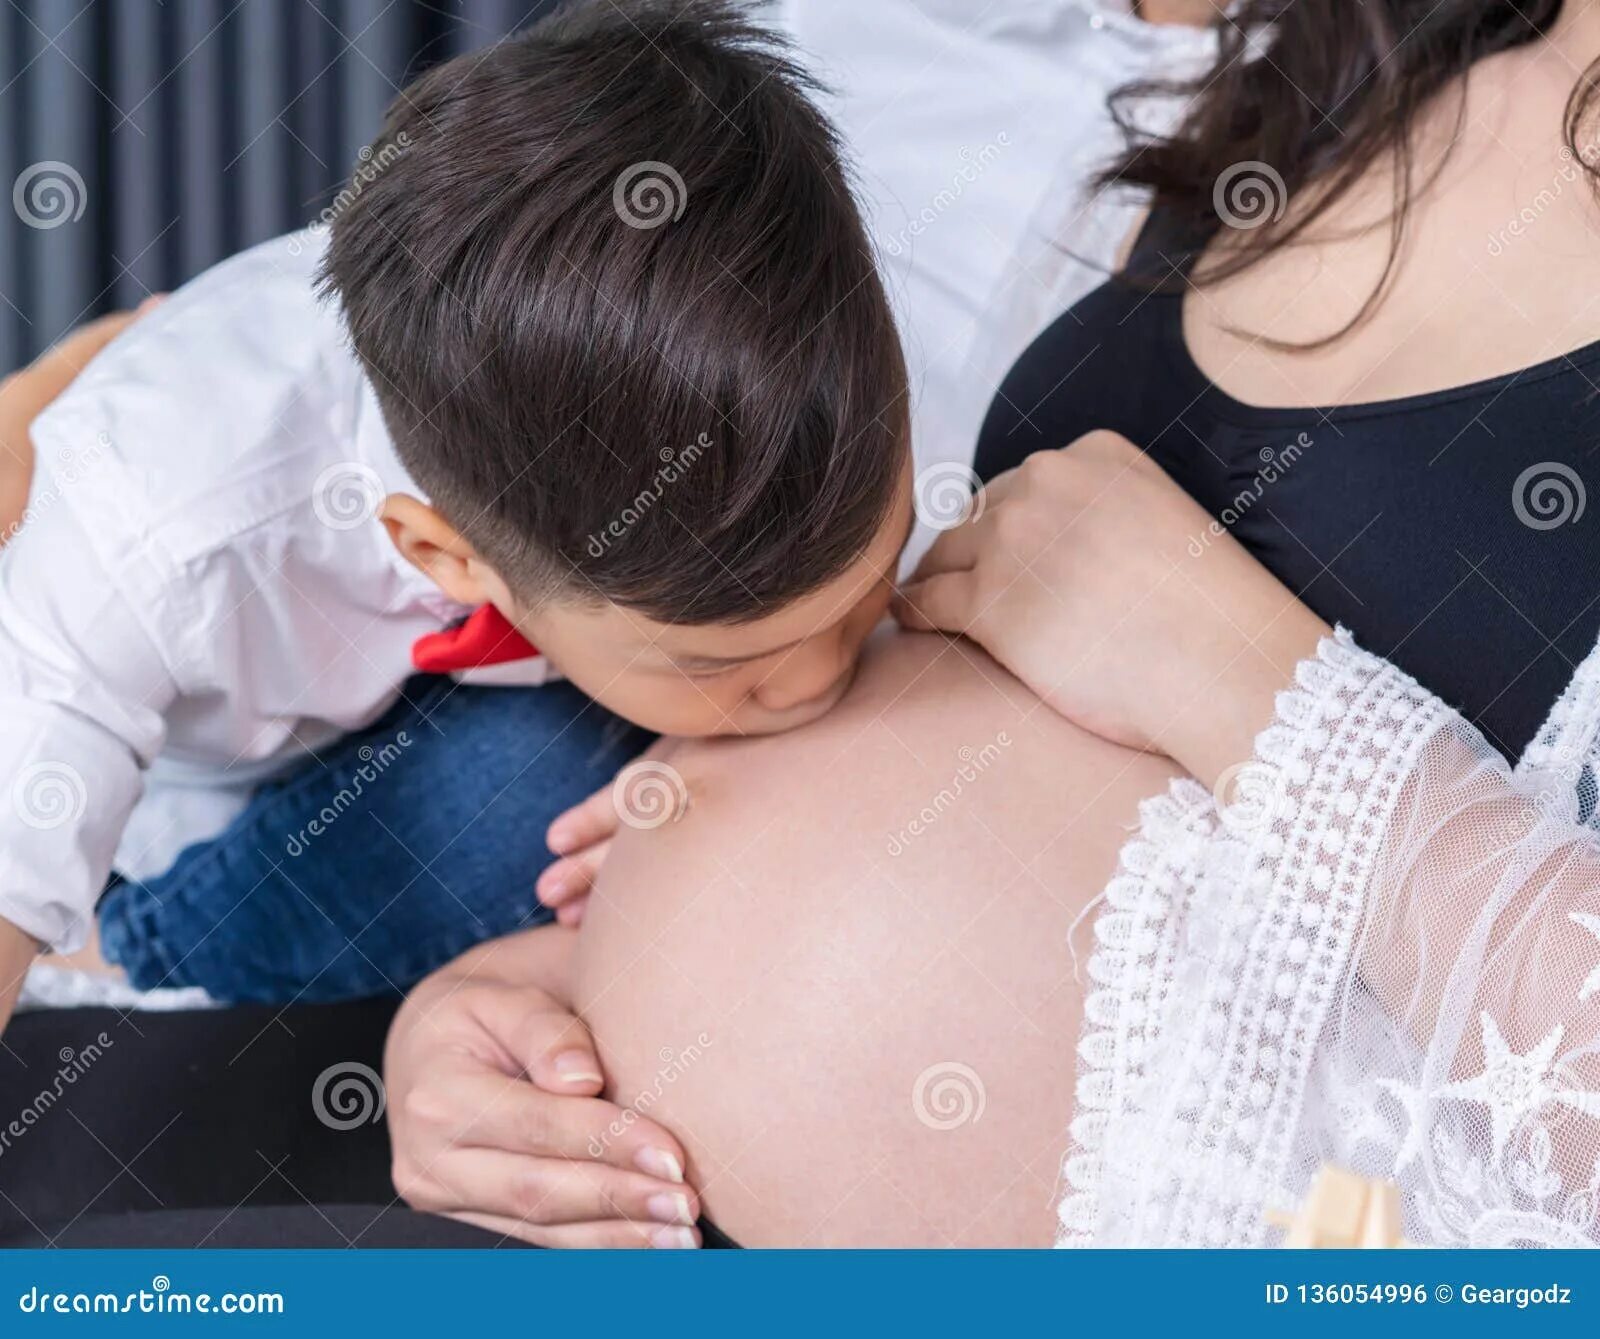 Потрогать мамину. Девочка целует живот беременной мамы. Мальчик целует живот беременной. Материнская грудь. Ребенок целует беременный животик.